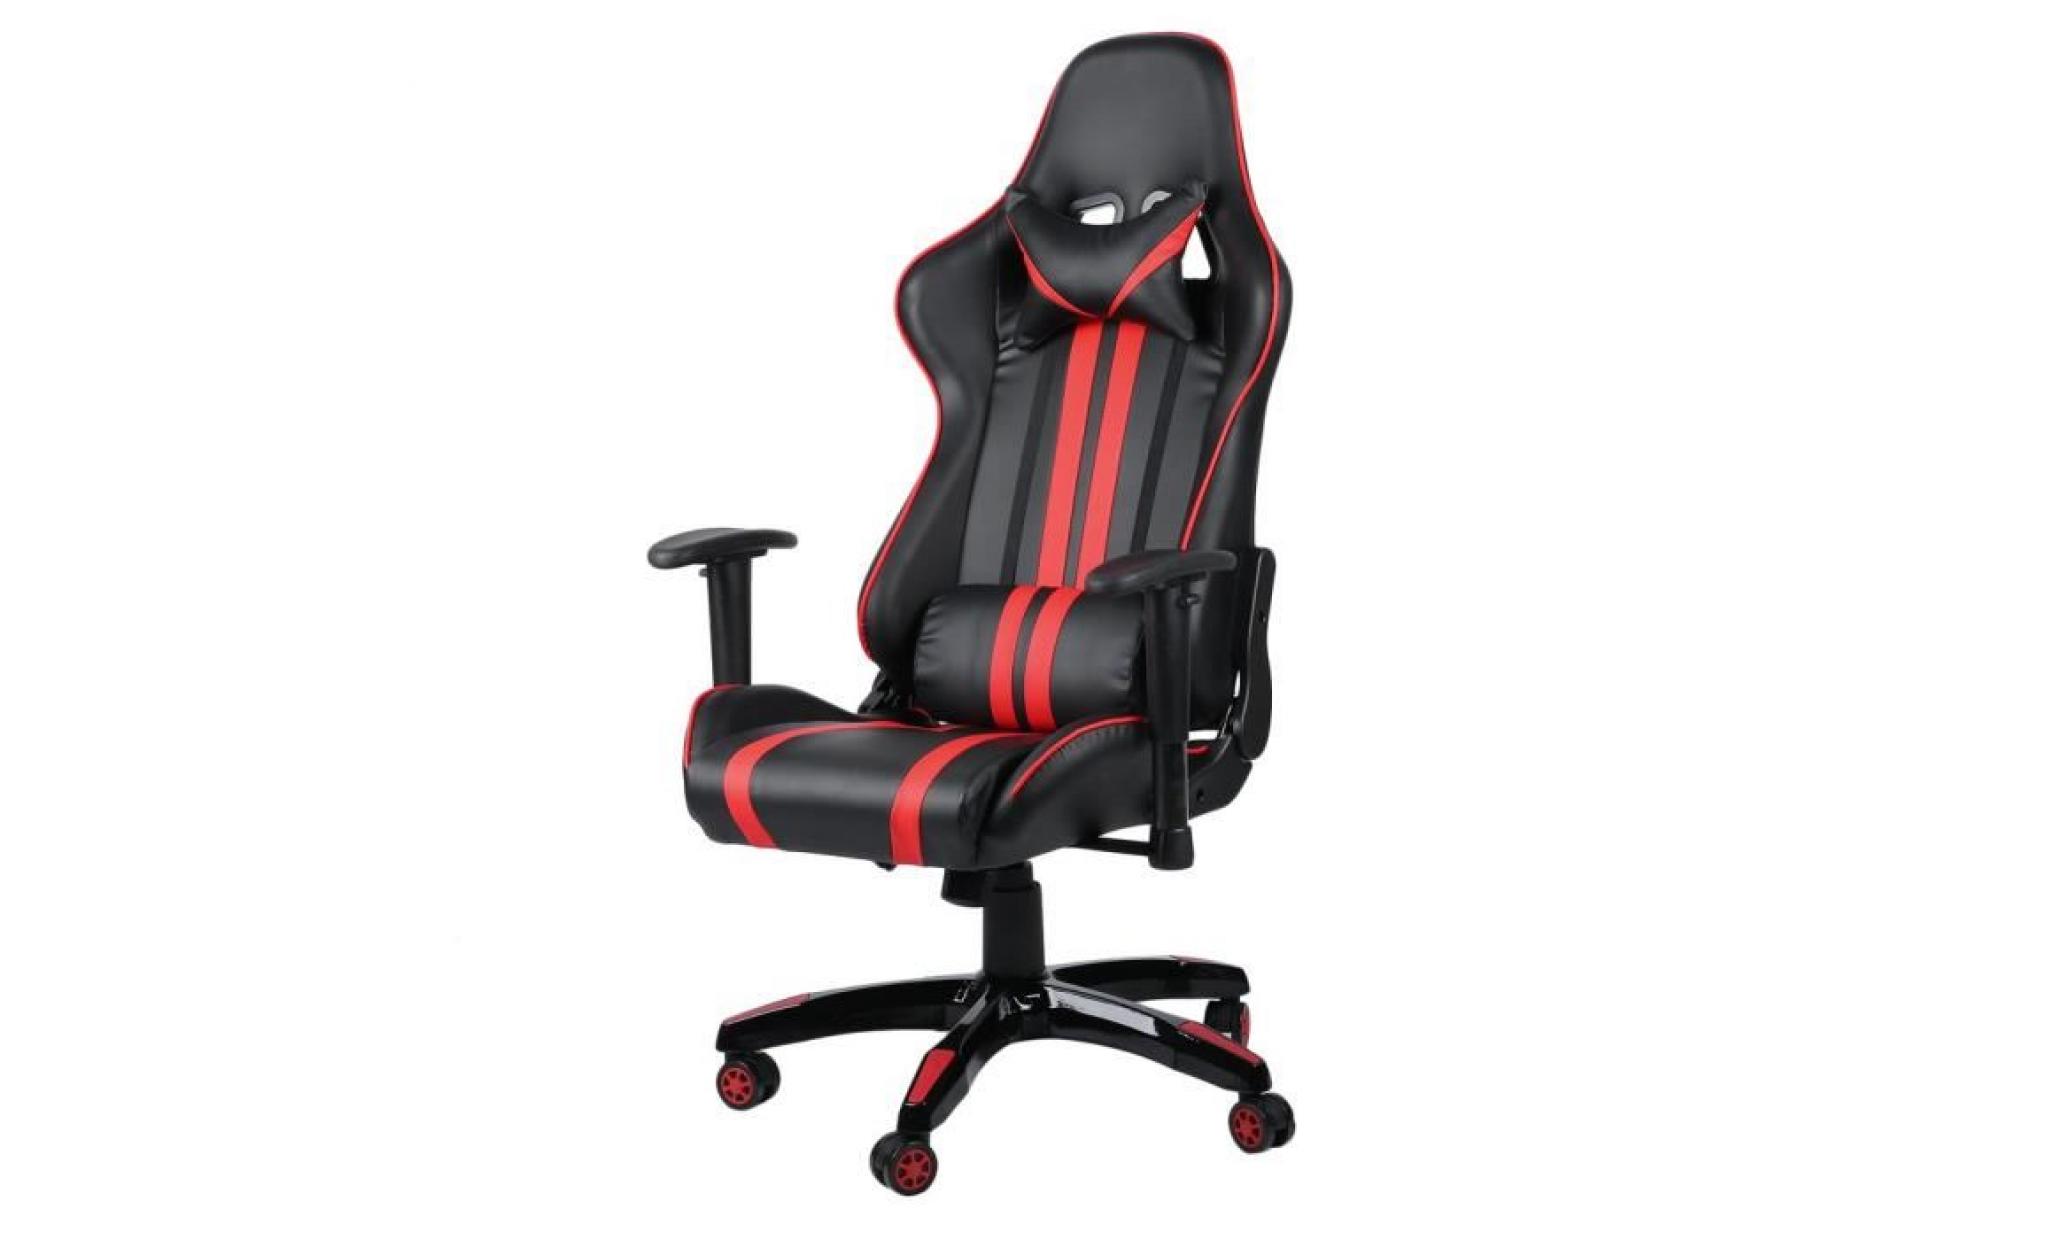 leshp® 2018 siège gaming fauteuil gamer chaise de jeu de bureau roues 360° rotation siège pu rouge et noir